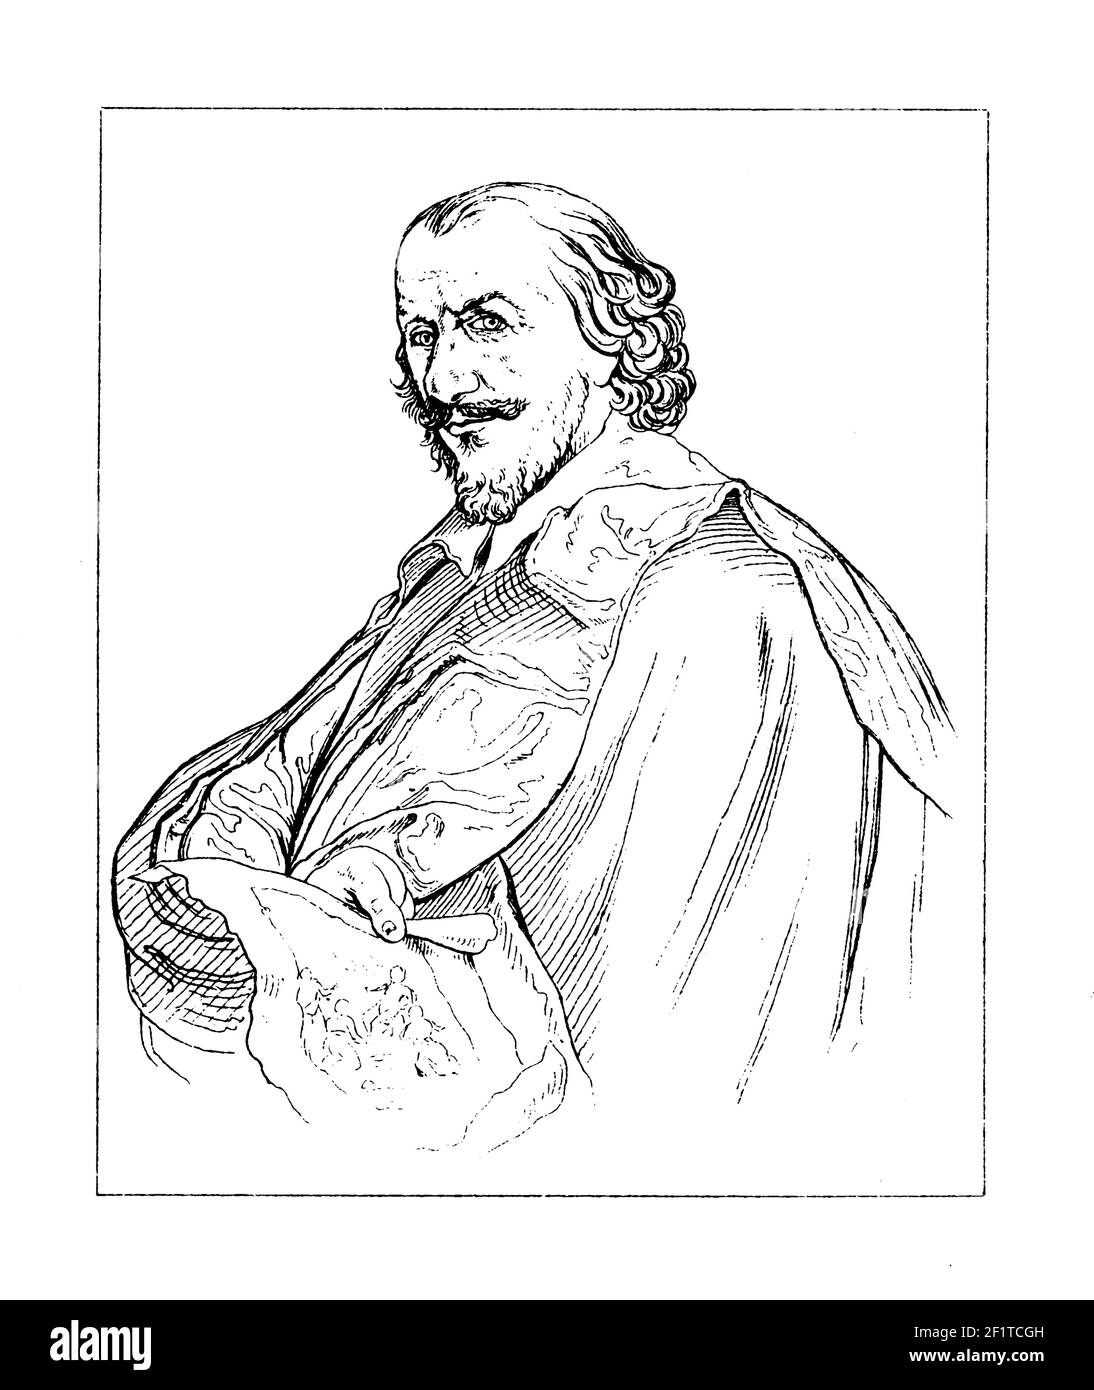 Ilustración antigua de un retrato de Matthaus Merian, grabador suizo. Nació el 22 de septiembre de 1593 en Basilea, Suiza y murió el 19 de junio de 16 Foto de stock